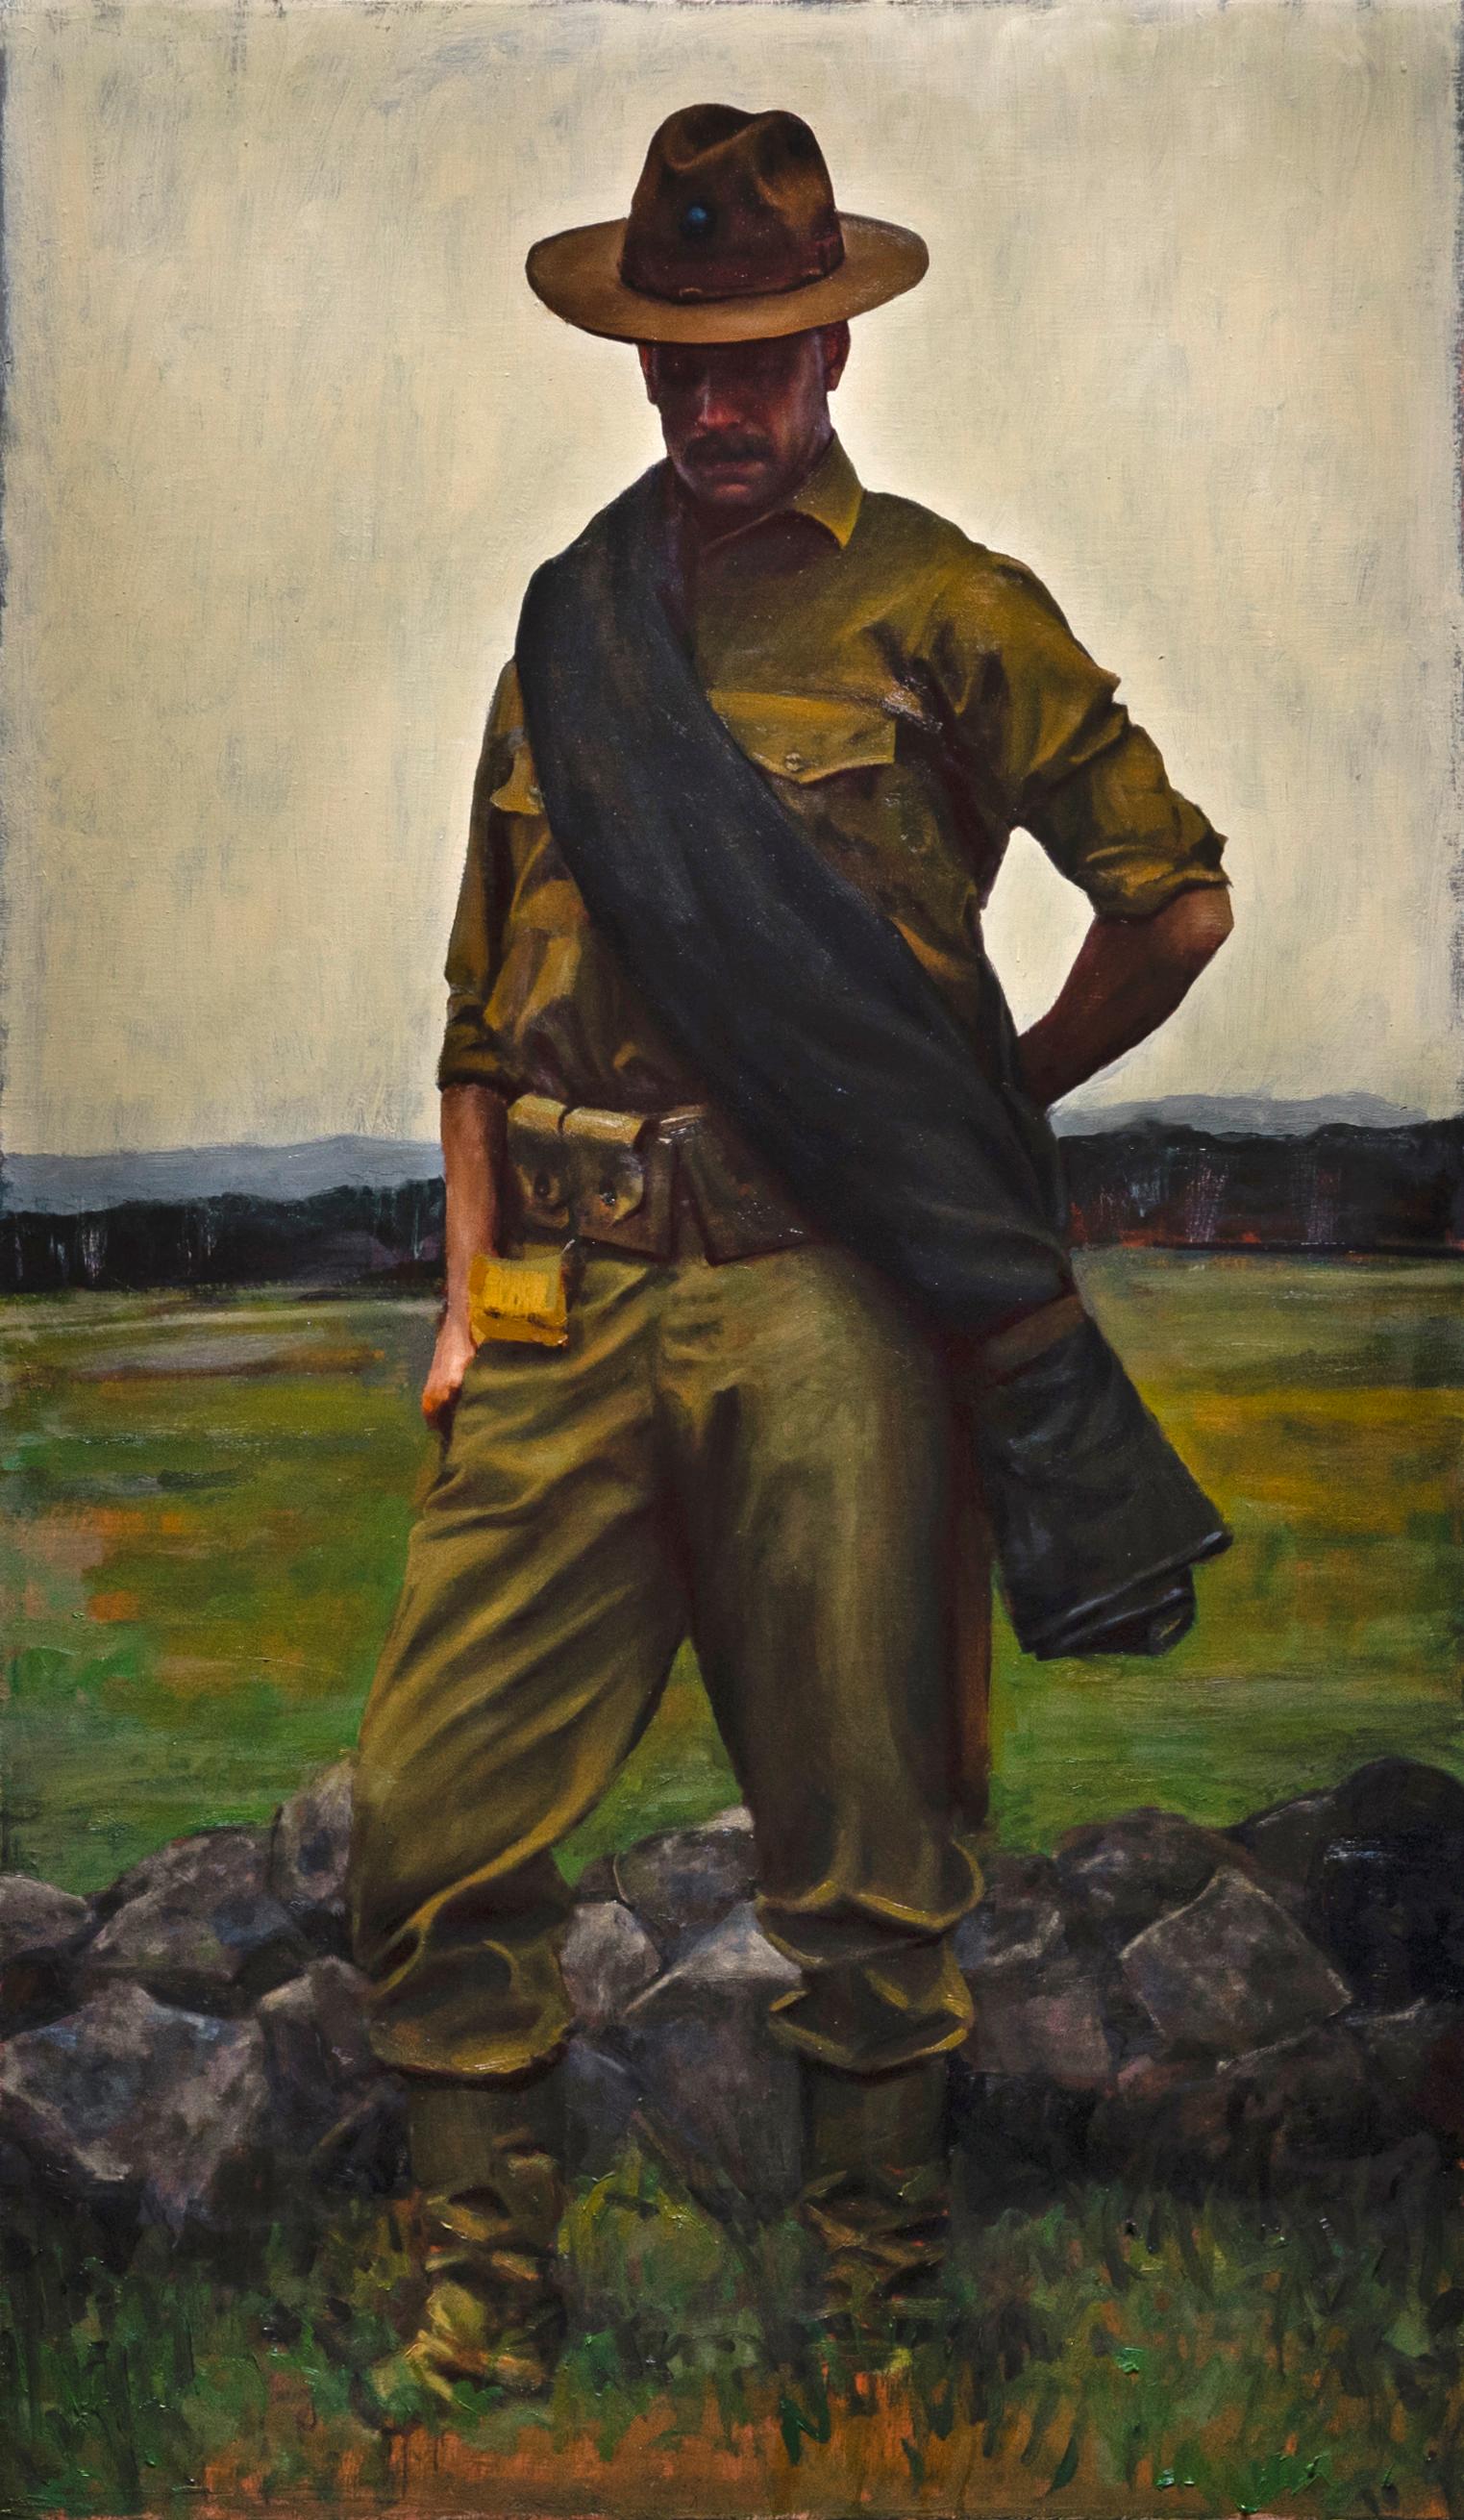 A Great Battlefield - A Lone Soldier Sanding in an Open Field, Oil on Linen